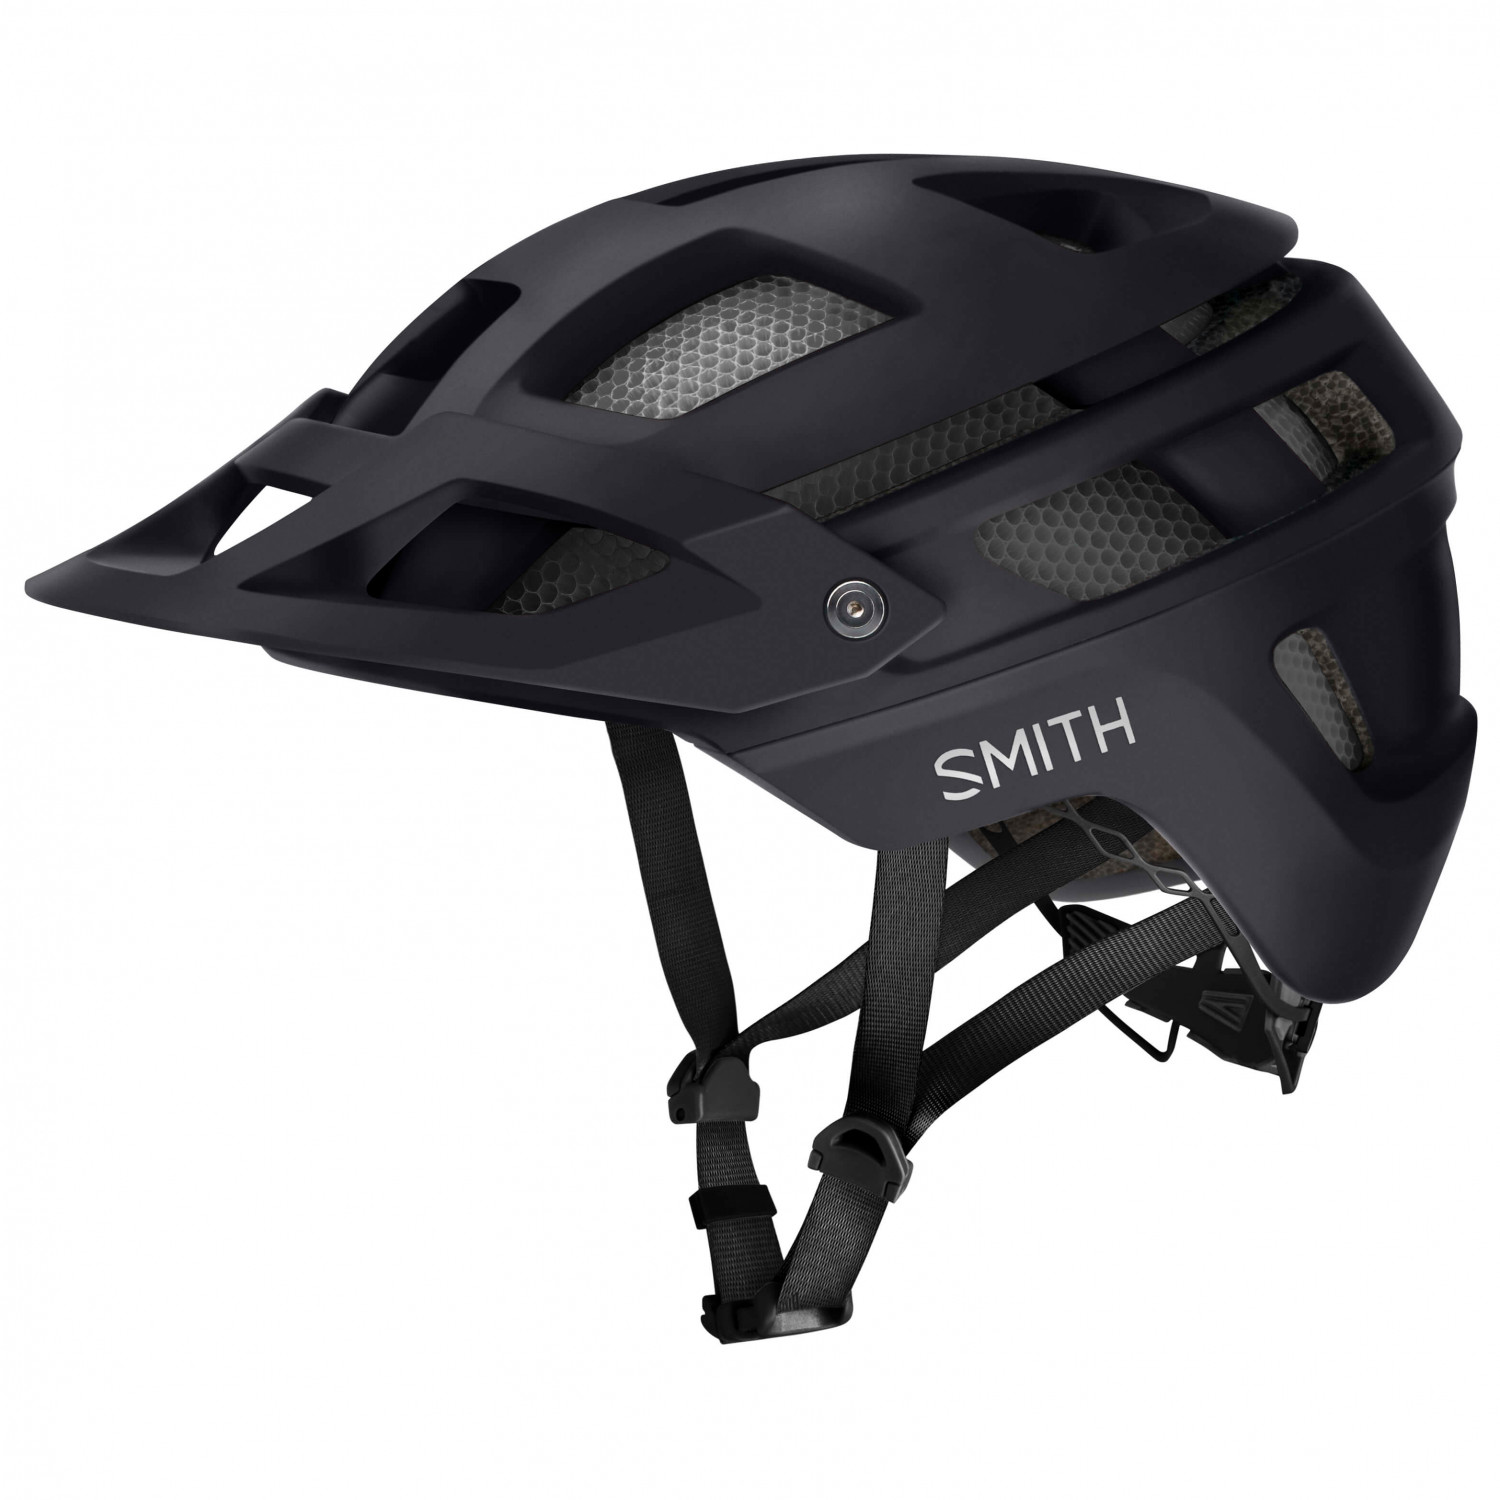 Велосипедный шлем Smith Forefront 2 MIPS, матовый черный